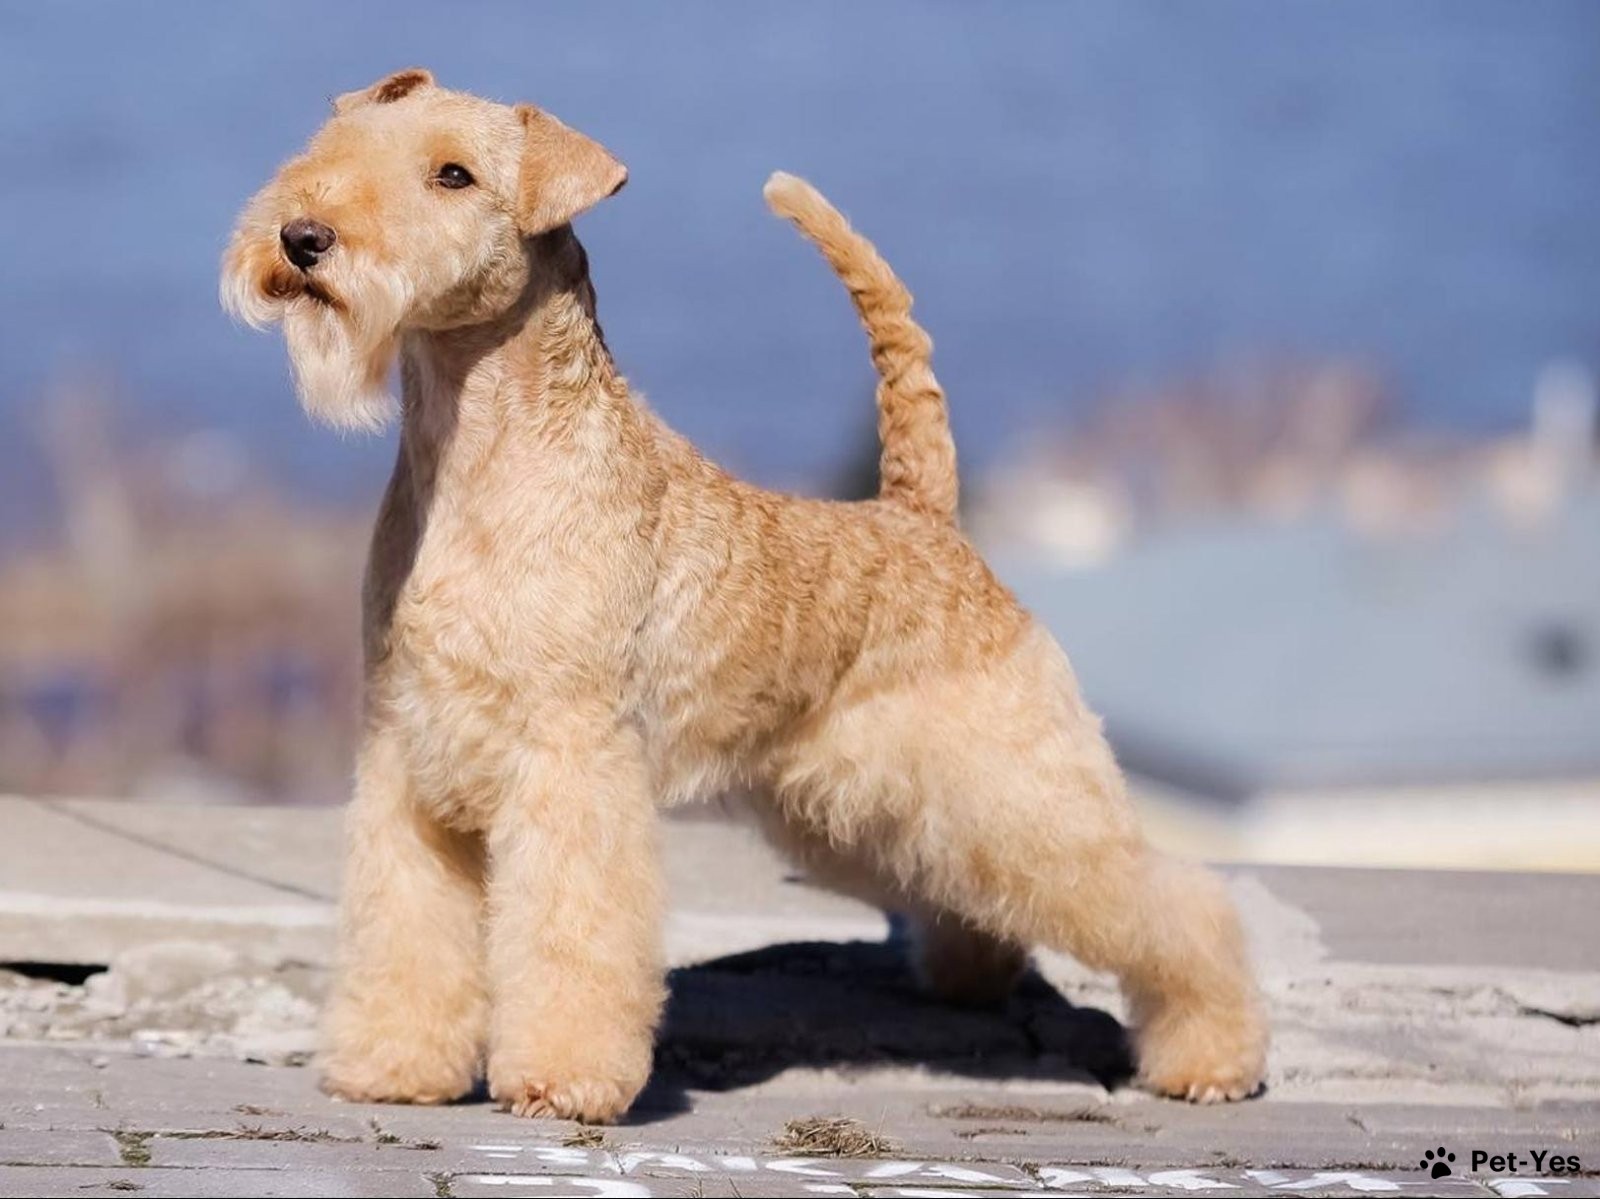 Лейкленд-терьер - описание породы, размеры и фото собаки | Цена щенков  лейкленд-терьера | Pet-Yes